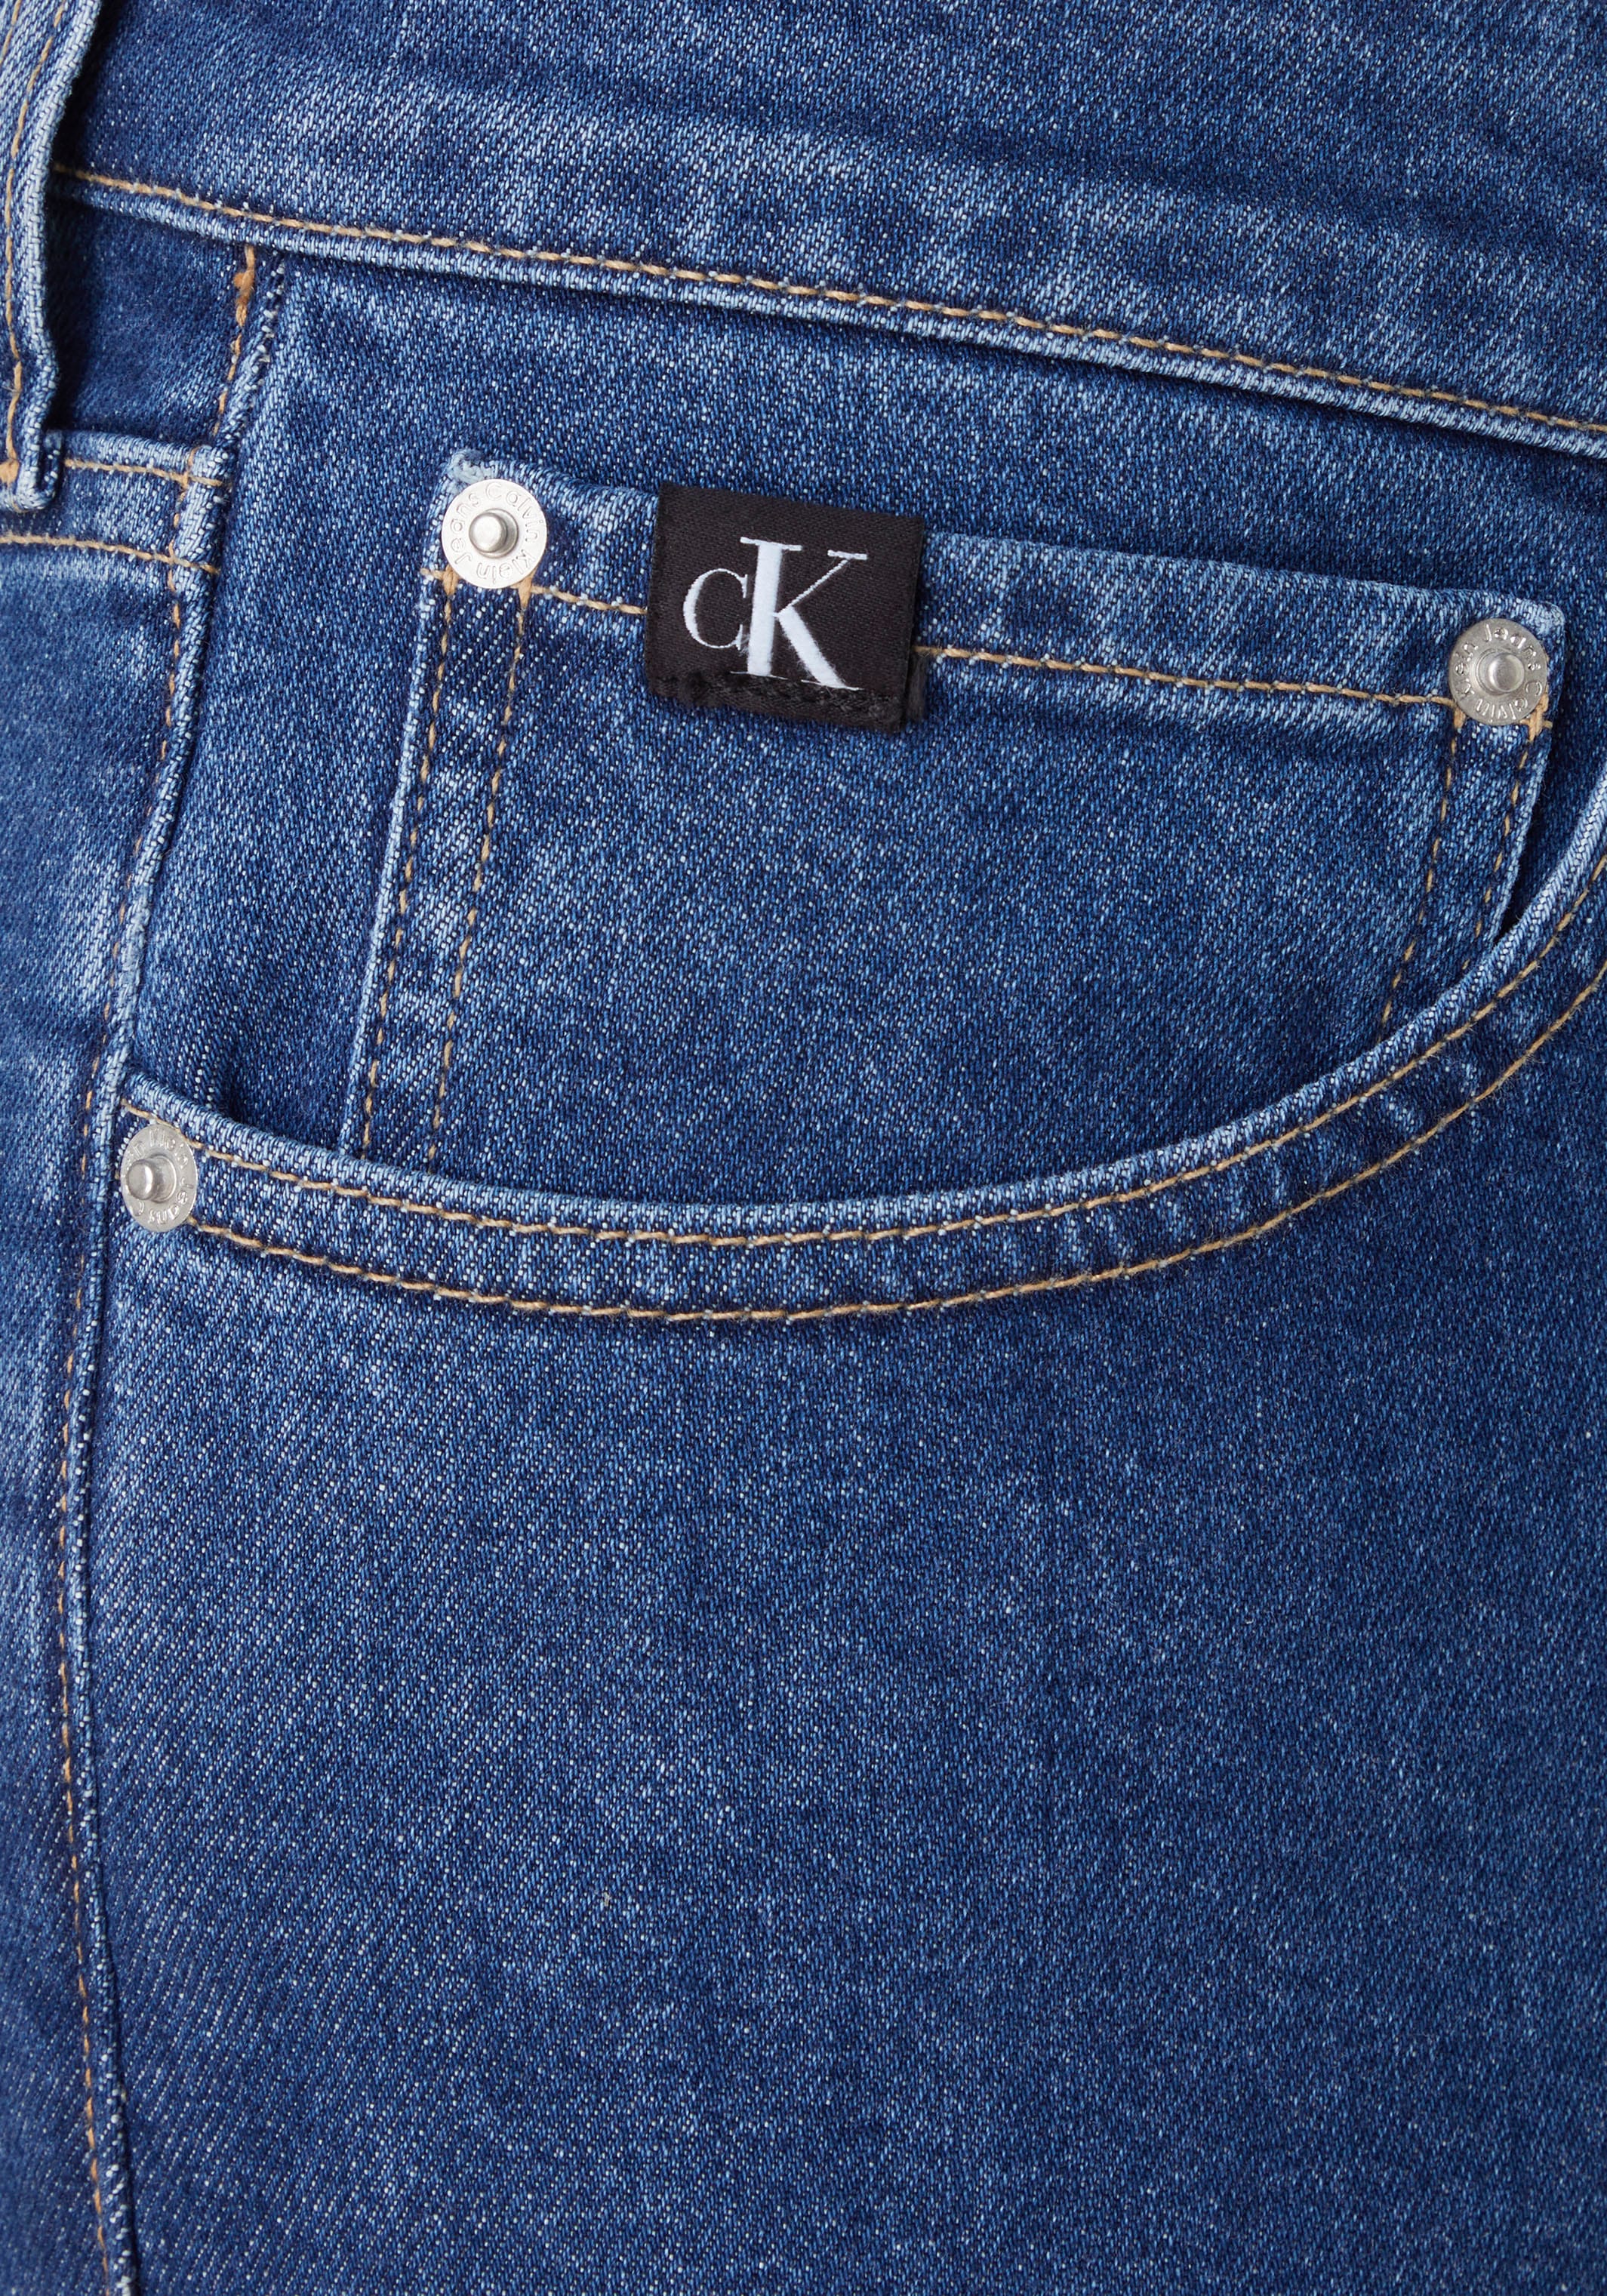 Jeans bestellen versandkostenfrei ohne Mindestbestellwert ➤ -